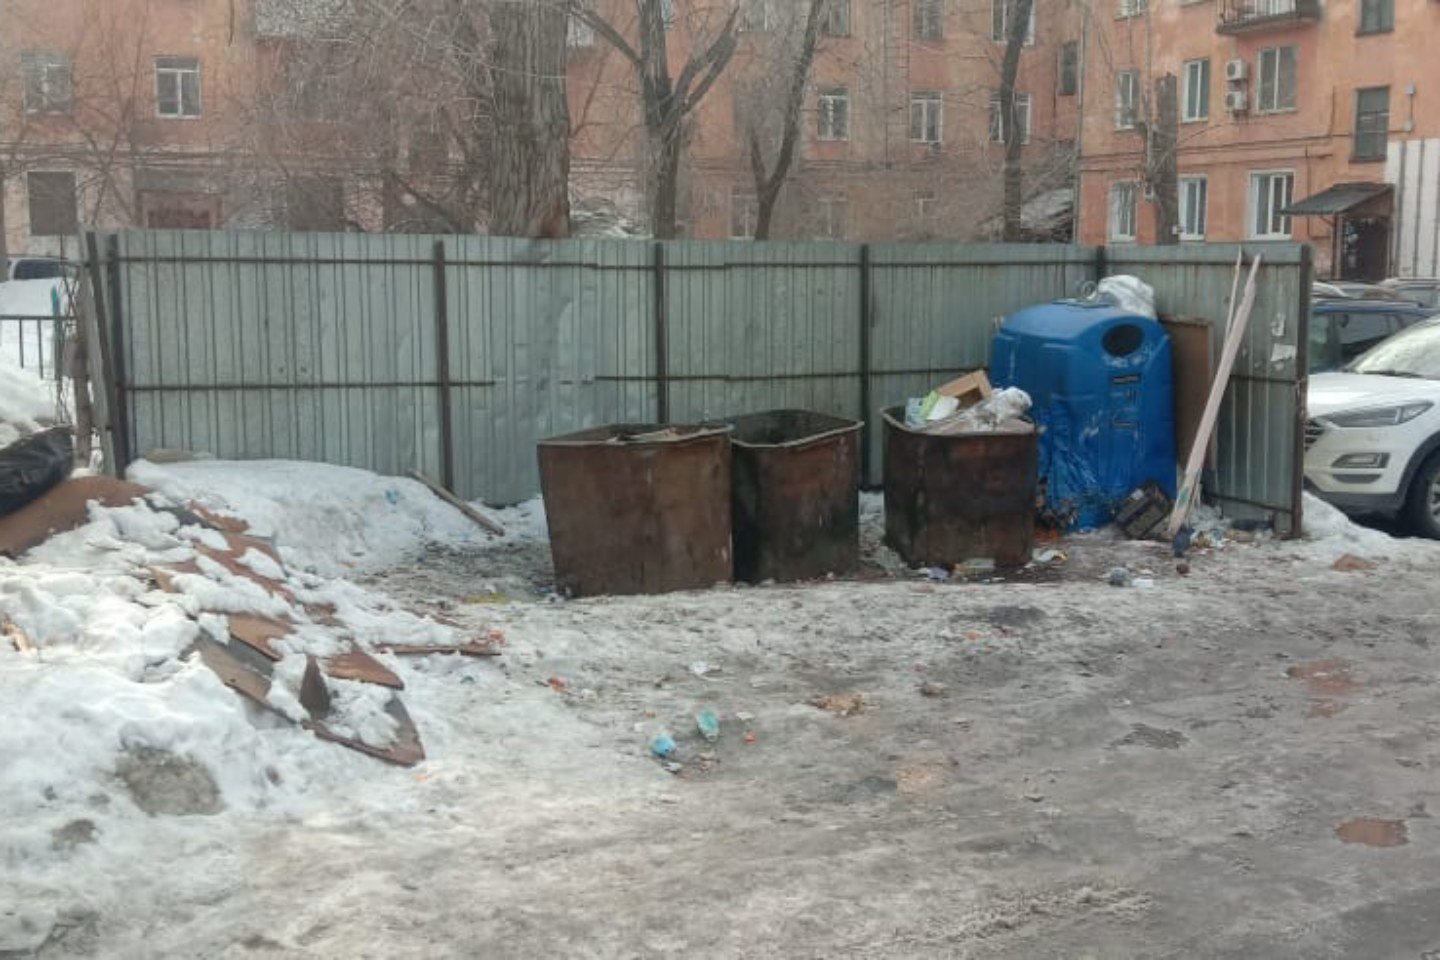 Новости Казахстана / Общество в Казахстане / Более пятисот мусорных контейнеров в Усть-Каменогорске требуют ремонта